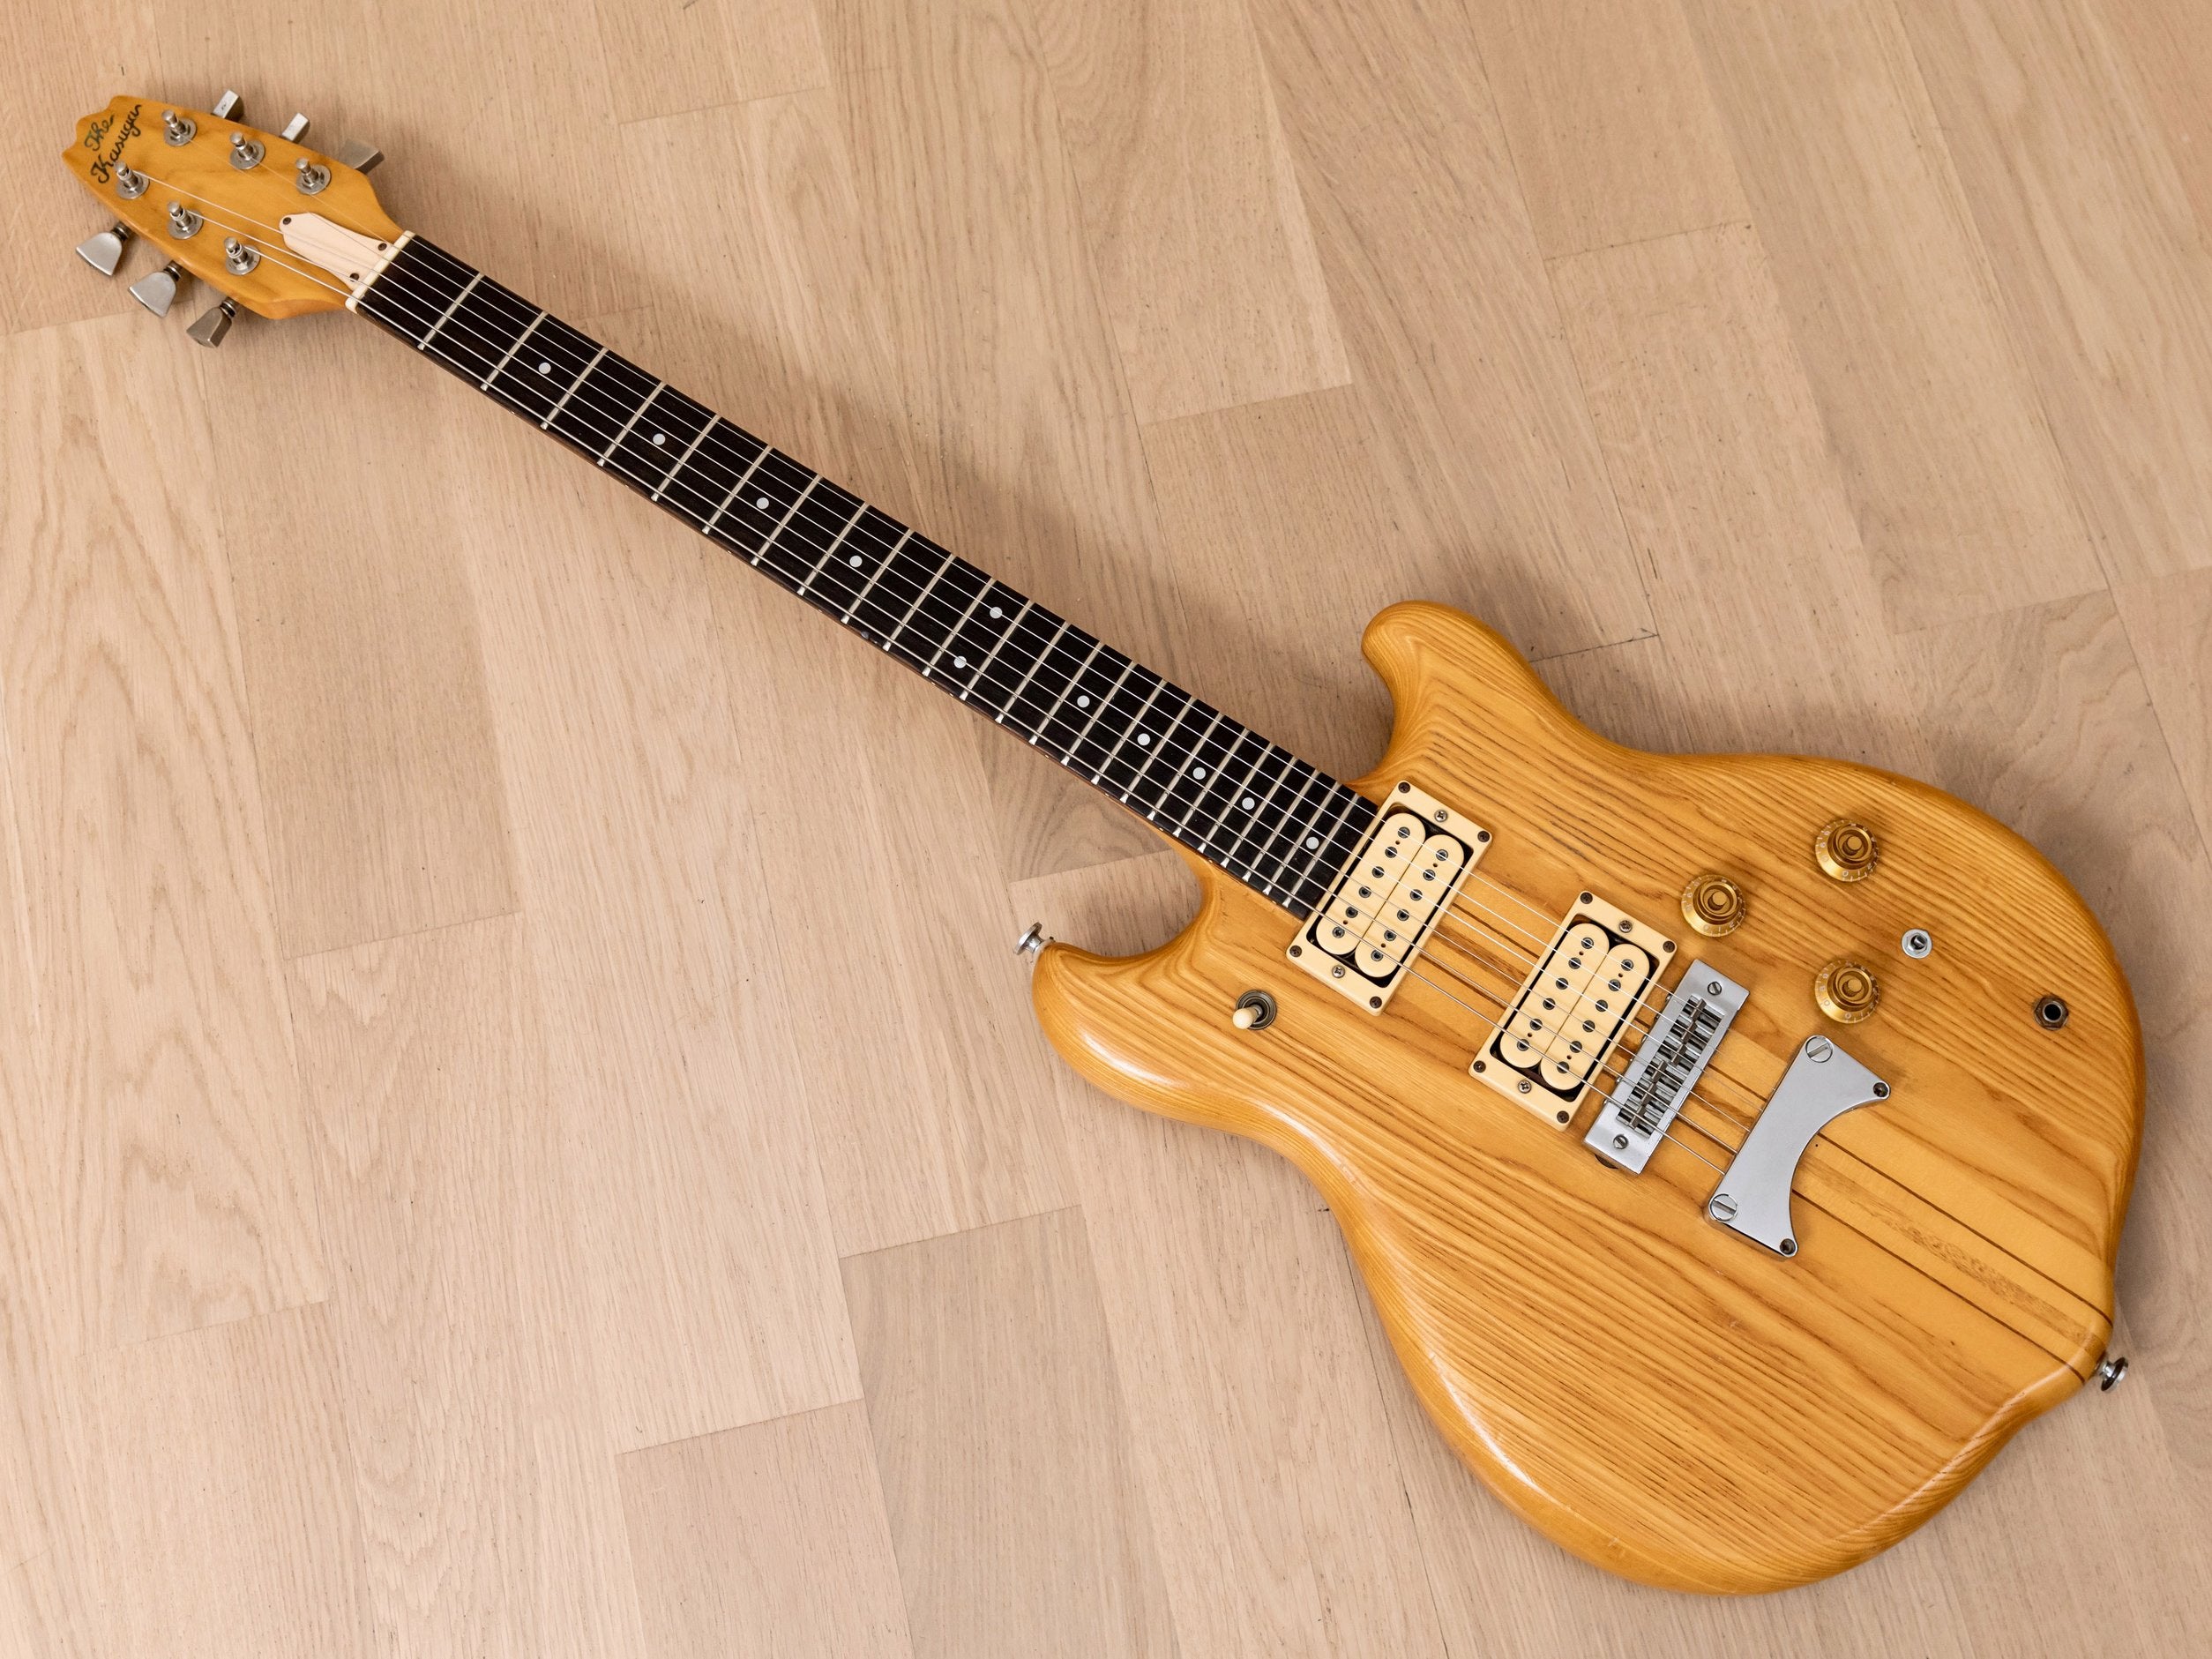 1979 Kasuga Scorpion SC-900 Vintage Neck Through Electric Guitar, 100% Original, Japan